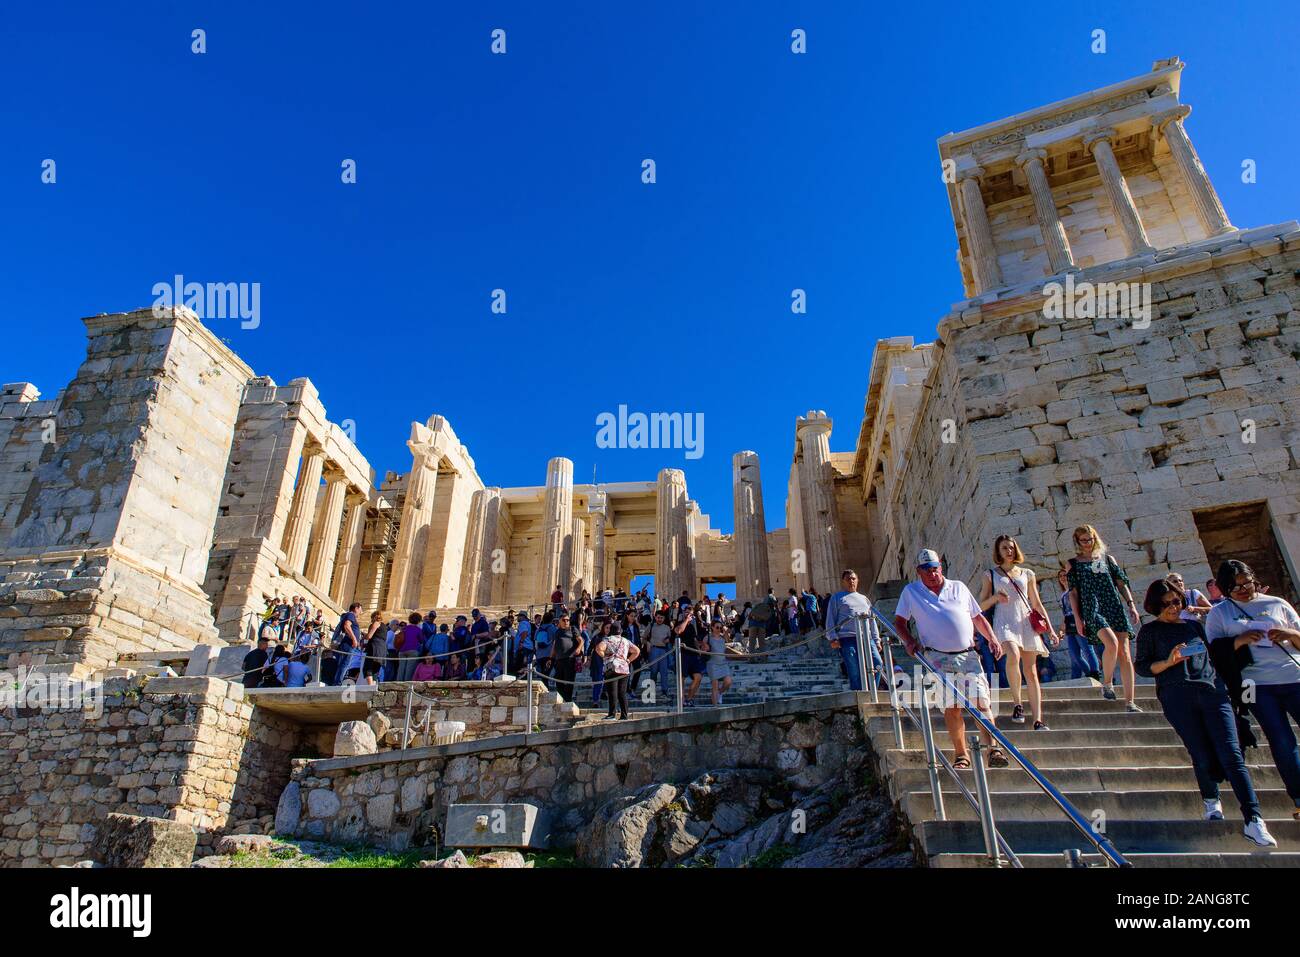 Le Parthénon, le célèbre ancien temple sur l'acropole d'Athènes, Grèce Banque D'Images